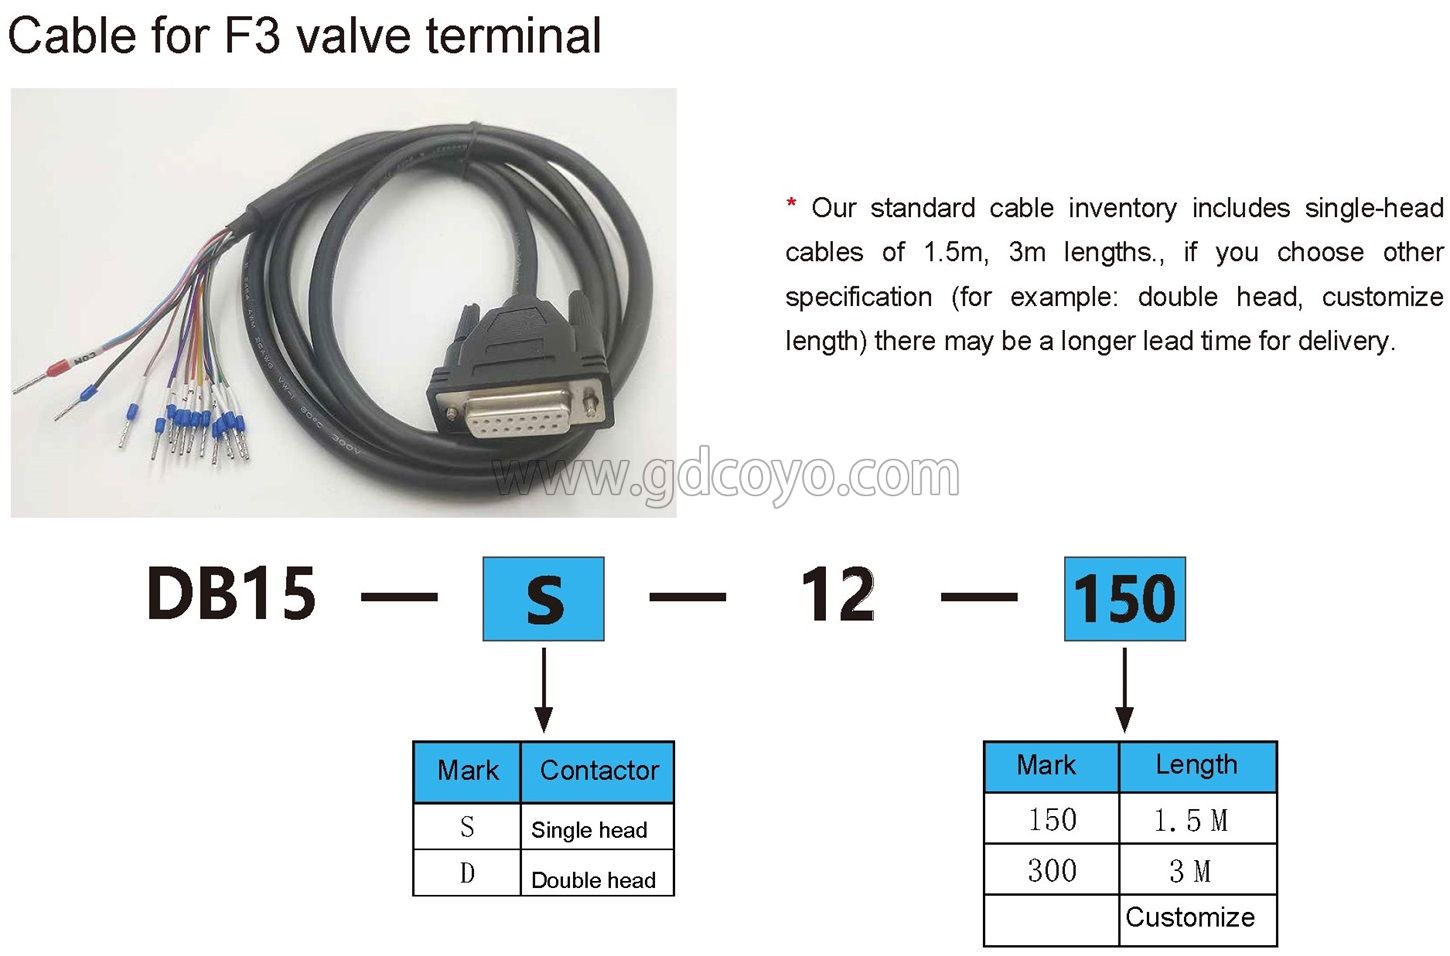 F3-4V110MC Multi-Pin Plug Valve Terminal